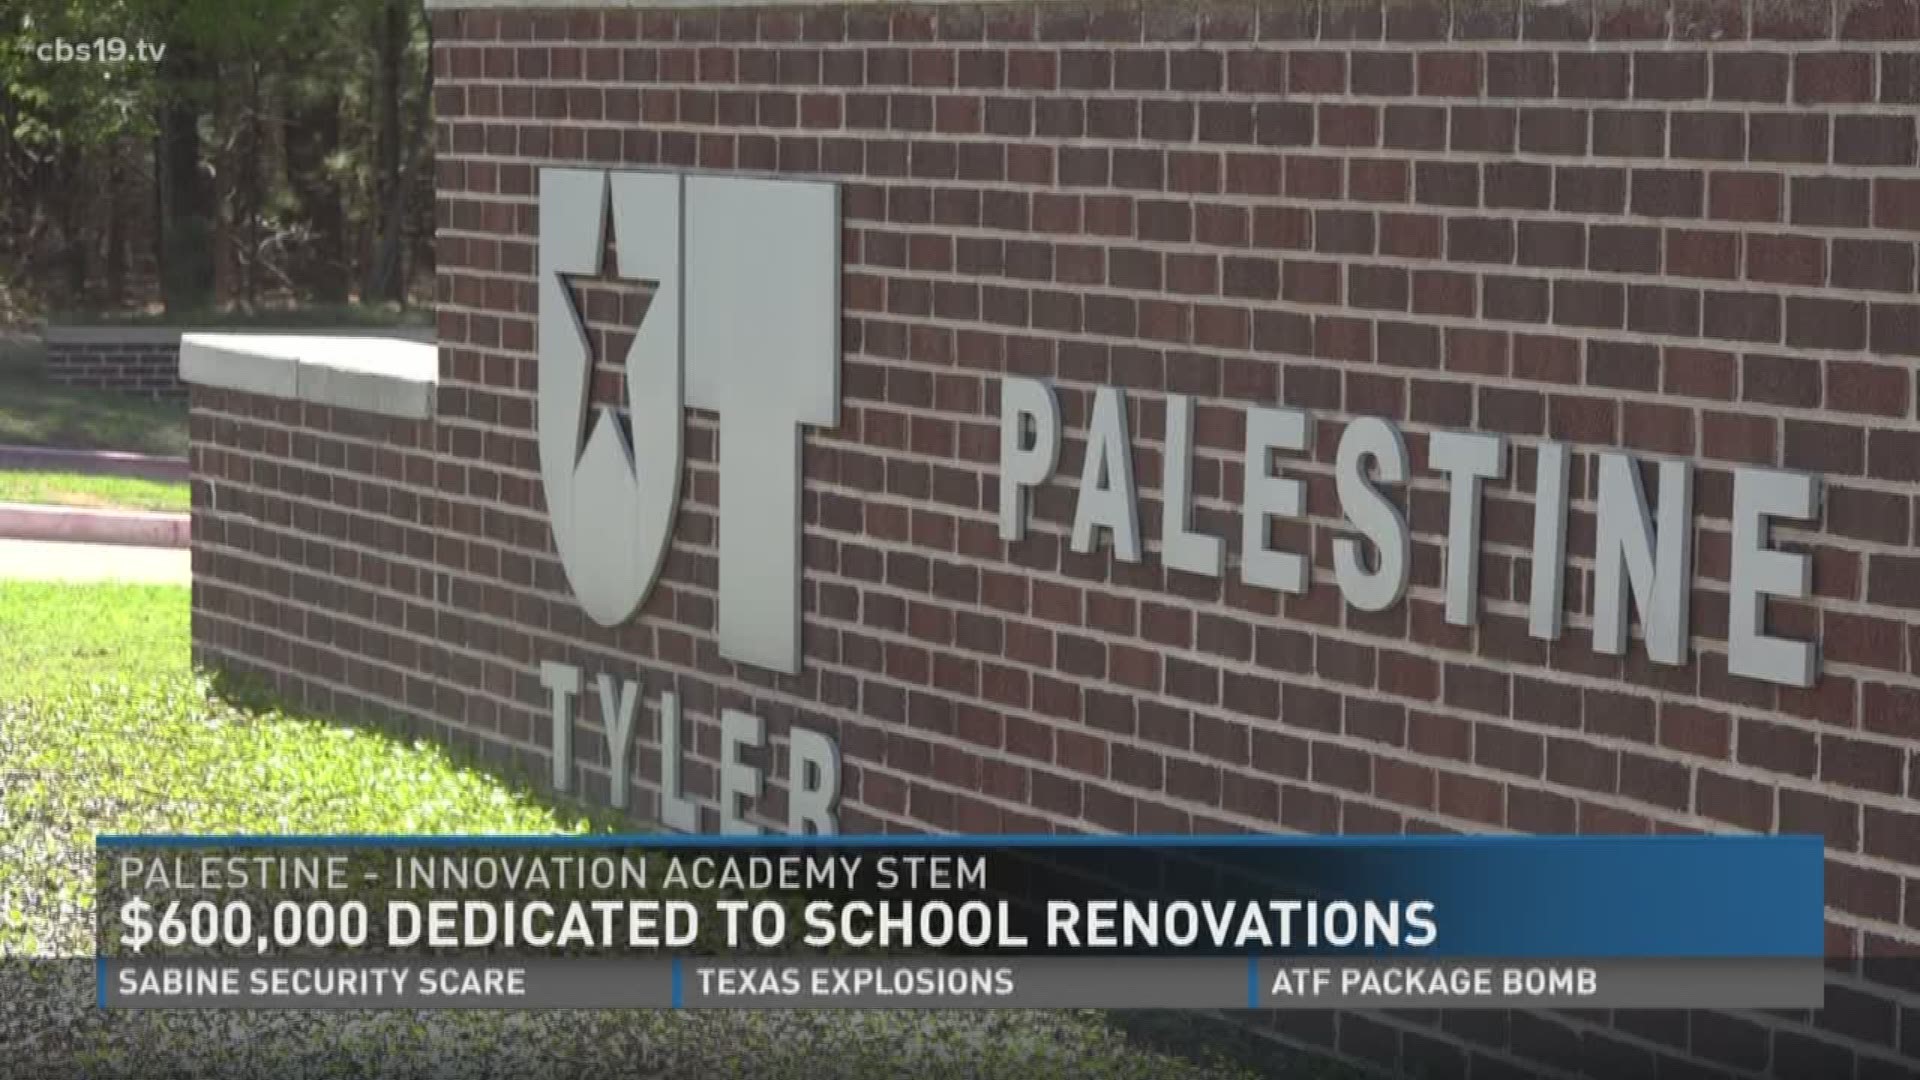 UT Tyler dedicates $600,000 to charter school renovations